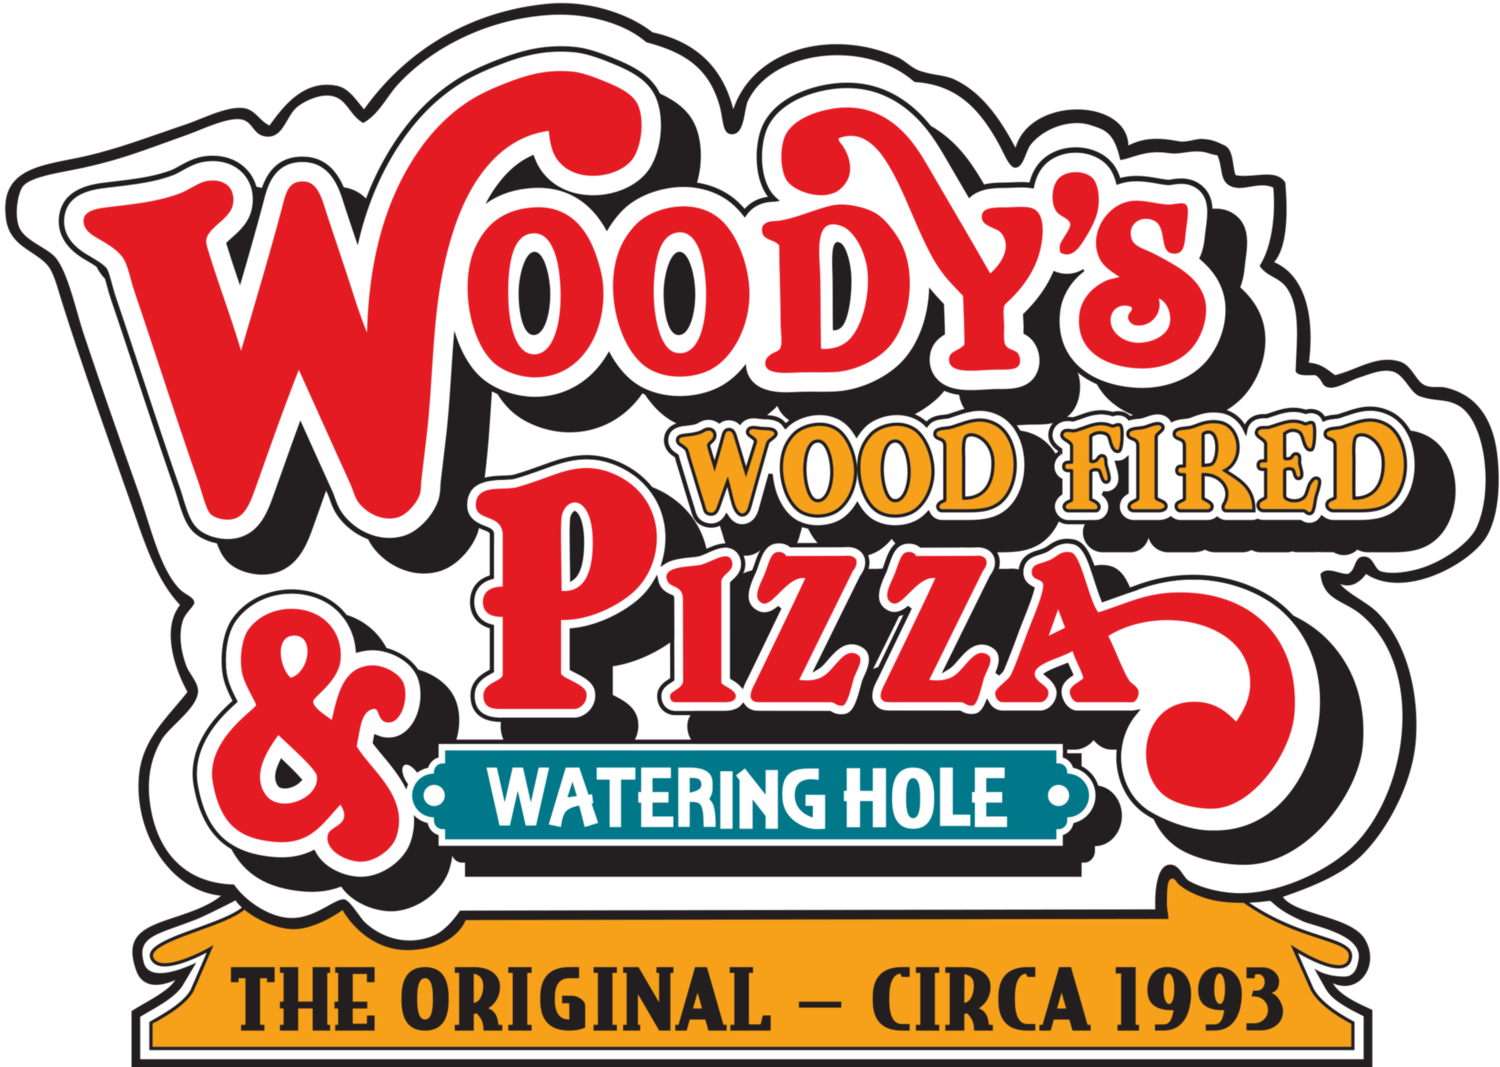 woodys_logo.png